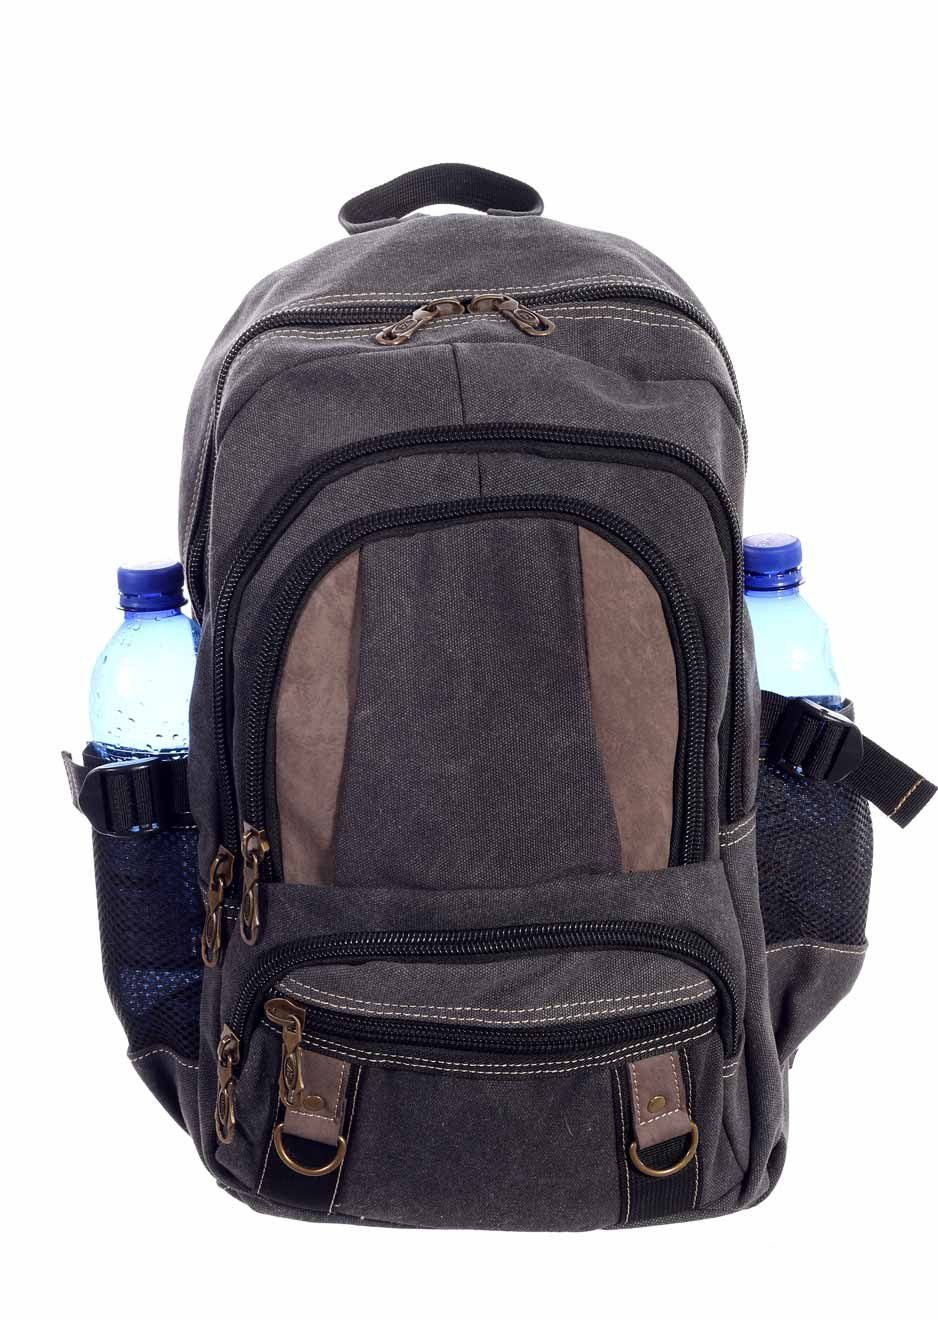 Damen Canvas Rucksack Backpack Schulrucksack Sport Reise Wandern Freizeit Schule